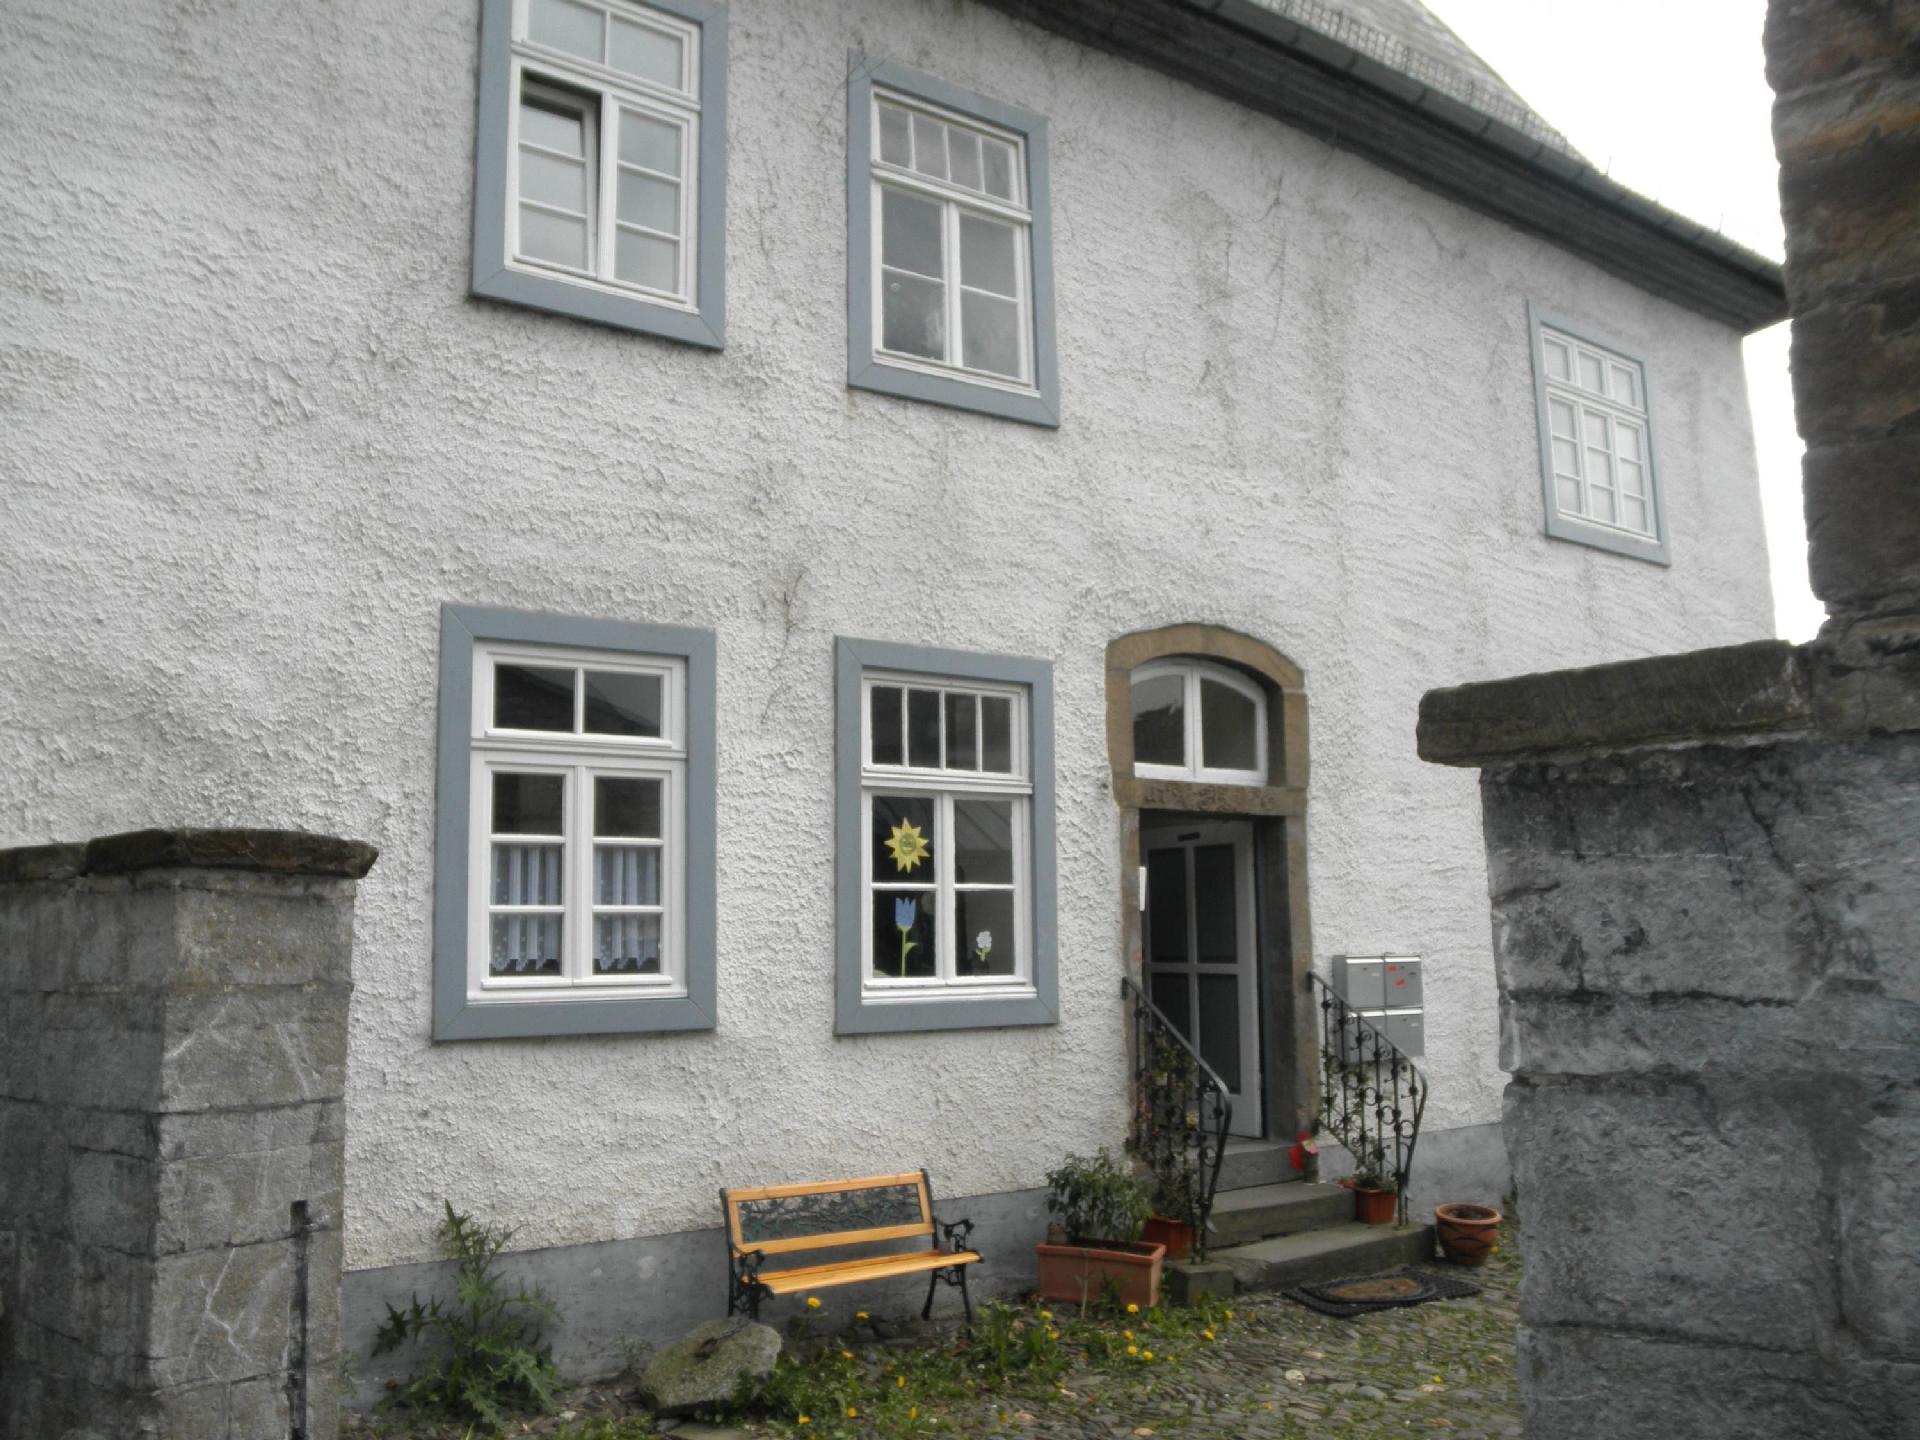 Wohnung in Arnsberg mit Grill und Garten Ferienwohnung in Deutschland